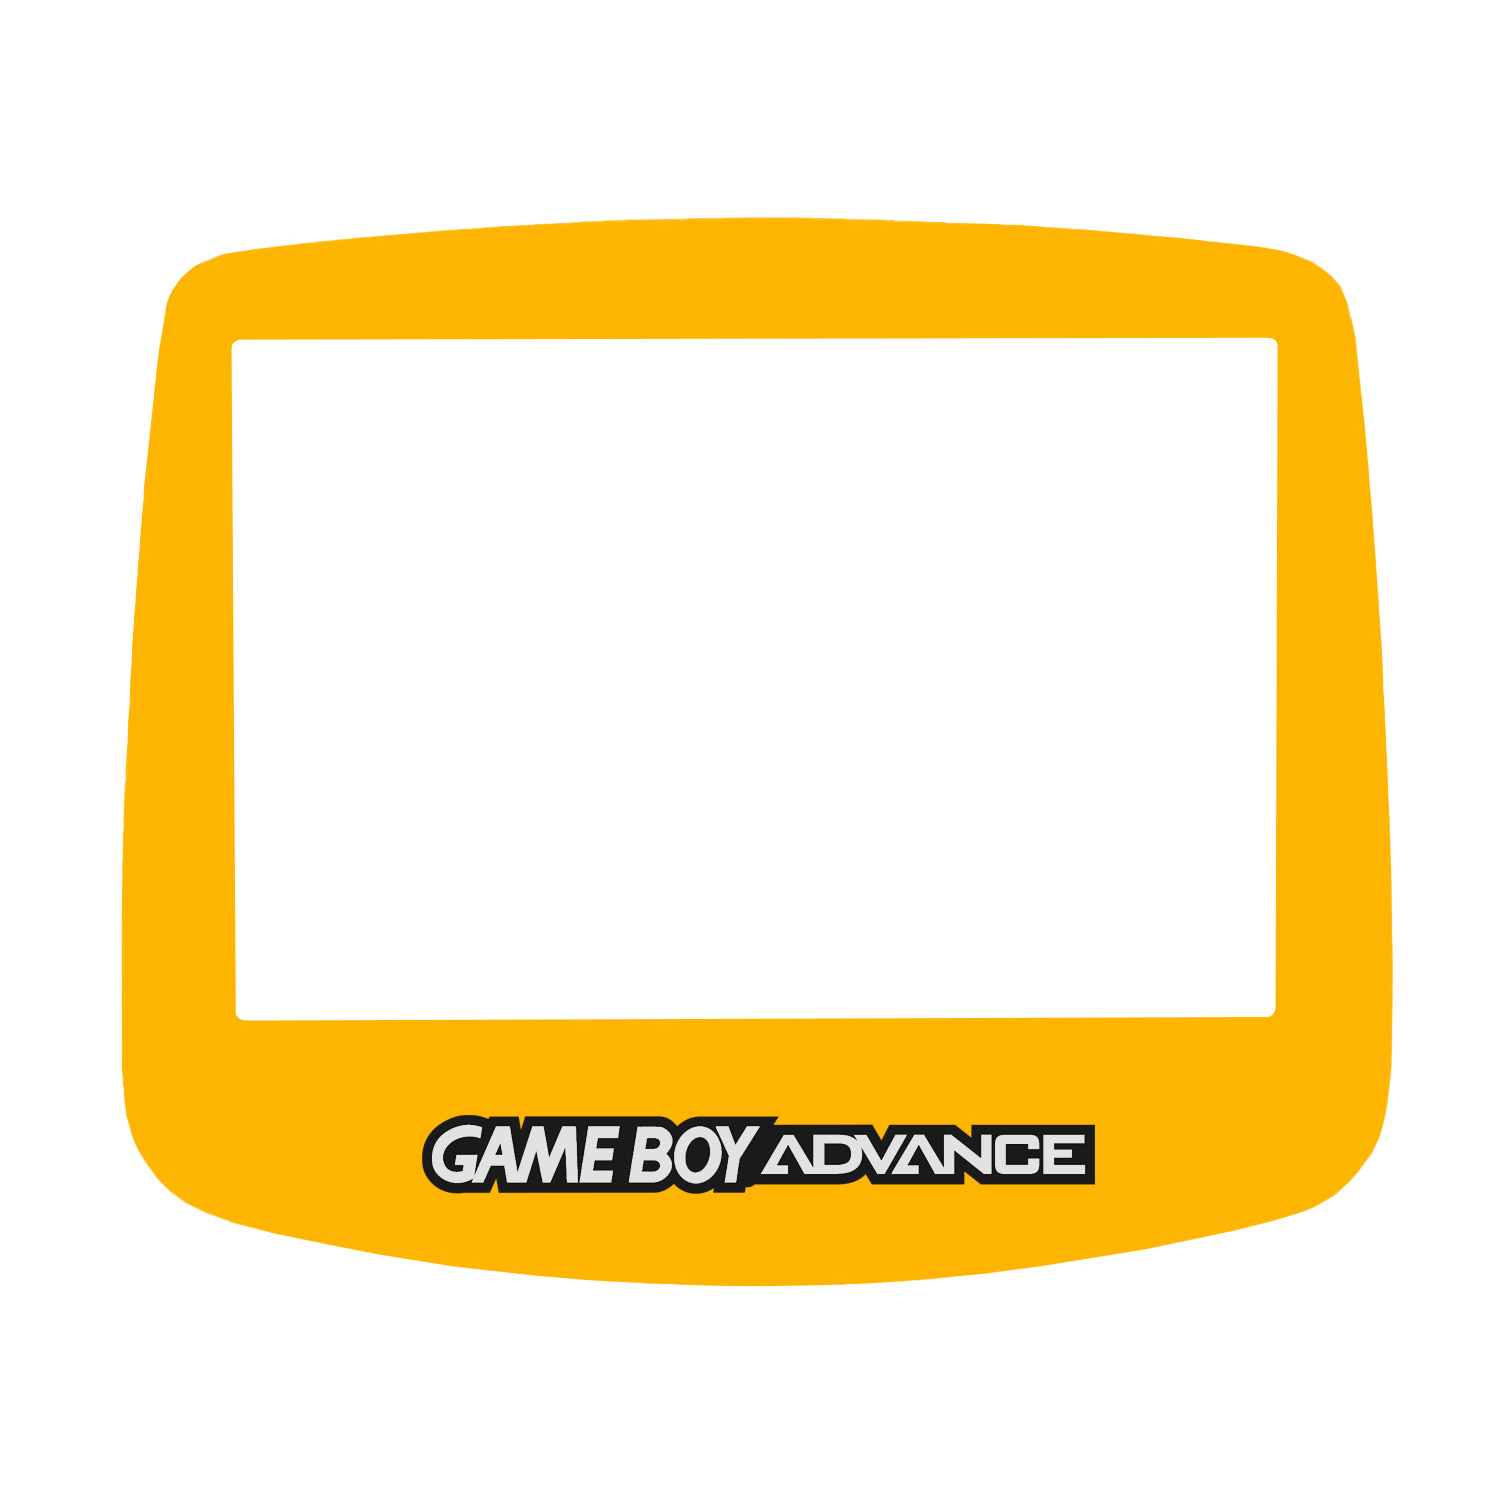 Display Scheibe (Gelb) für Game Boy Advance